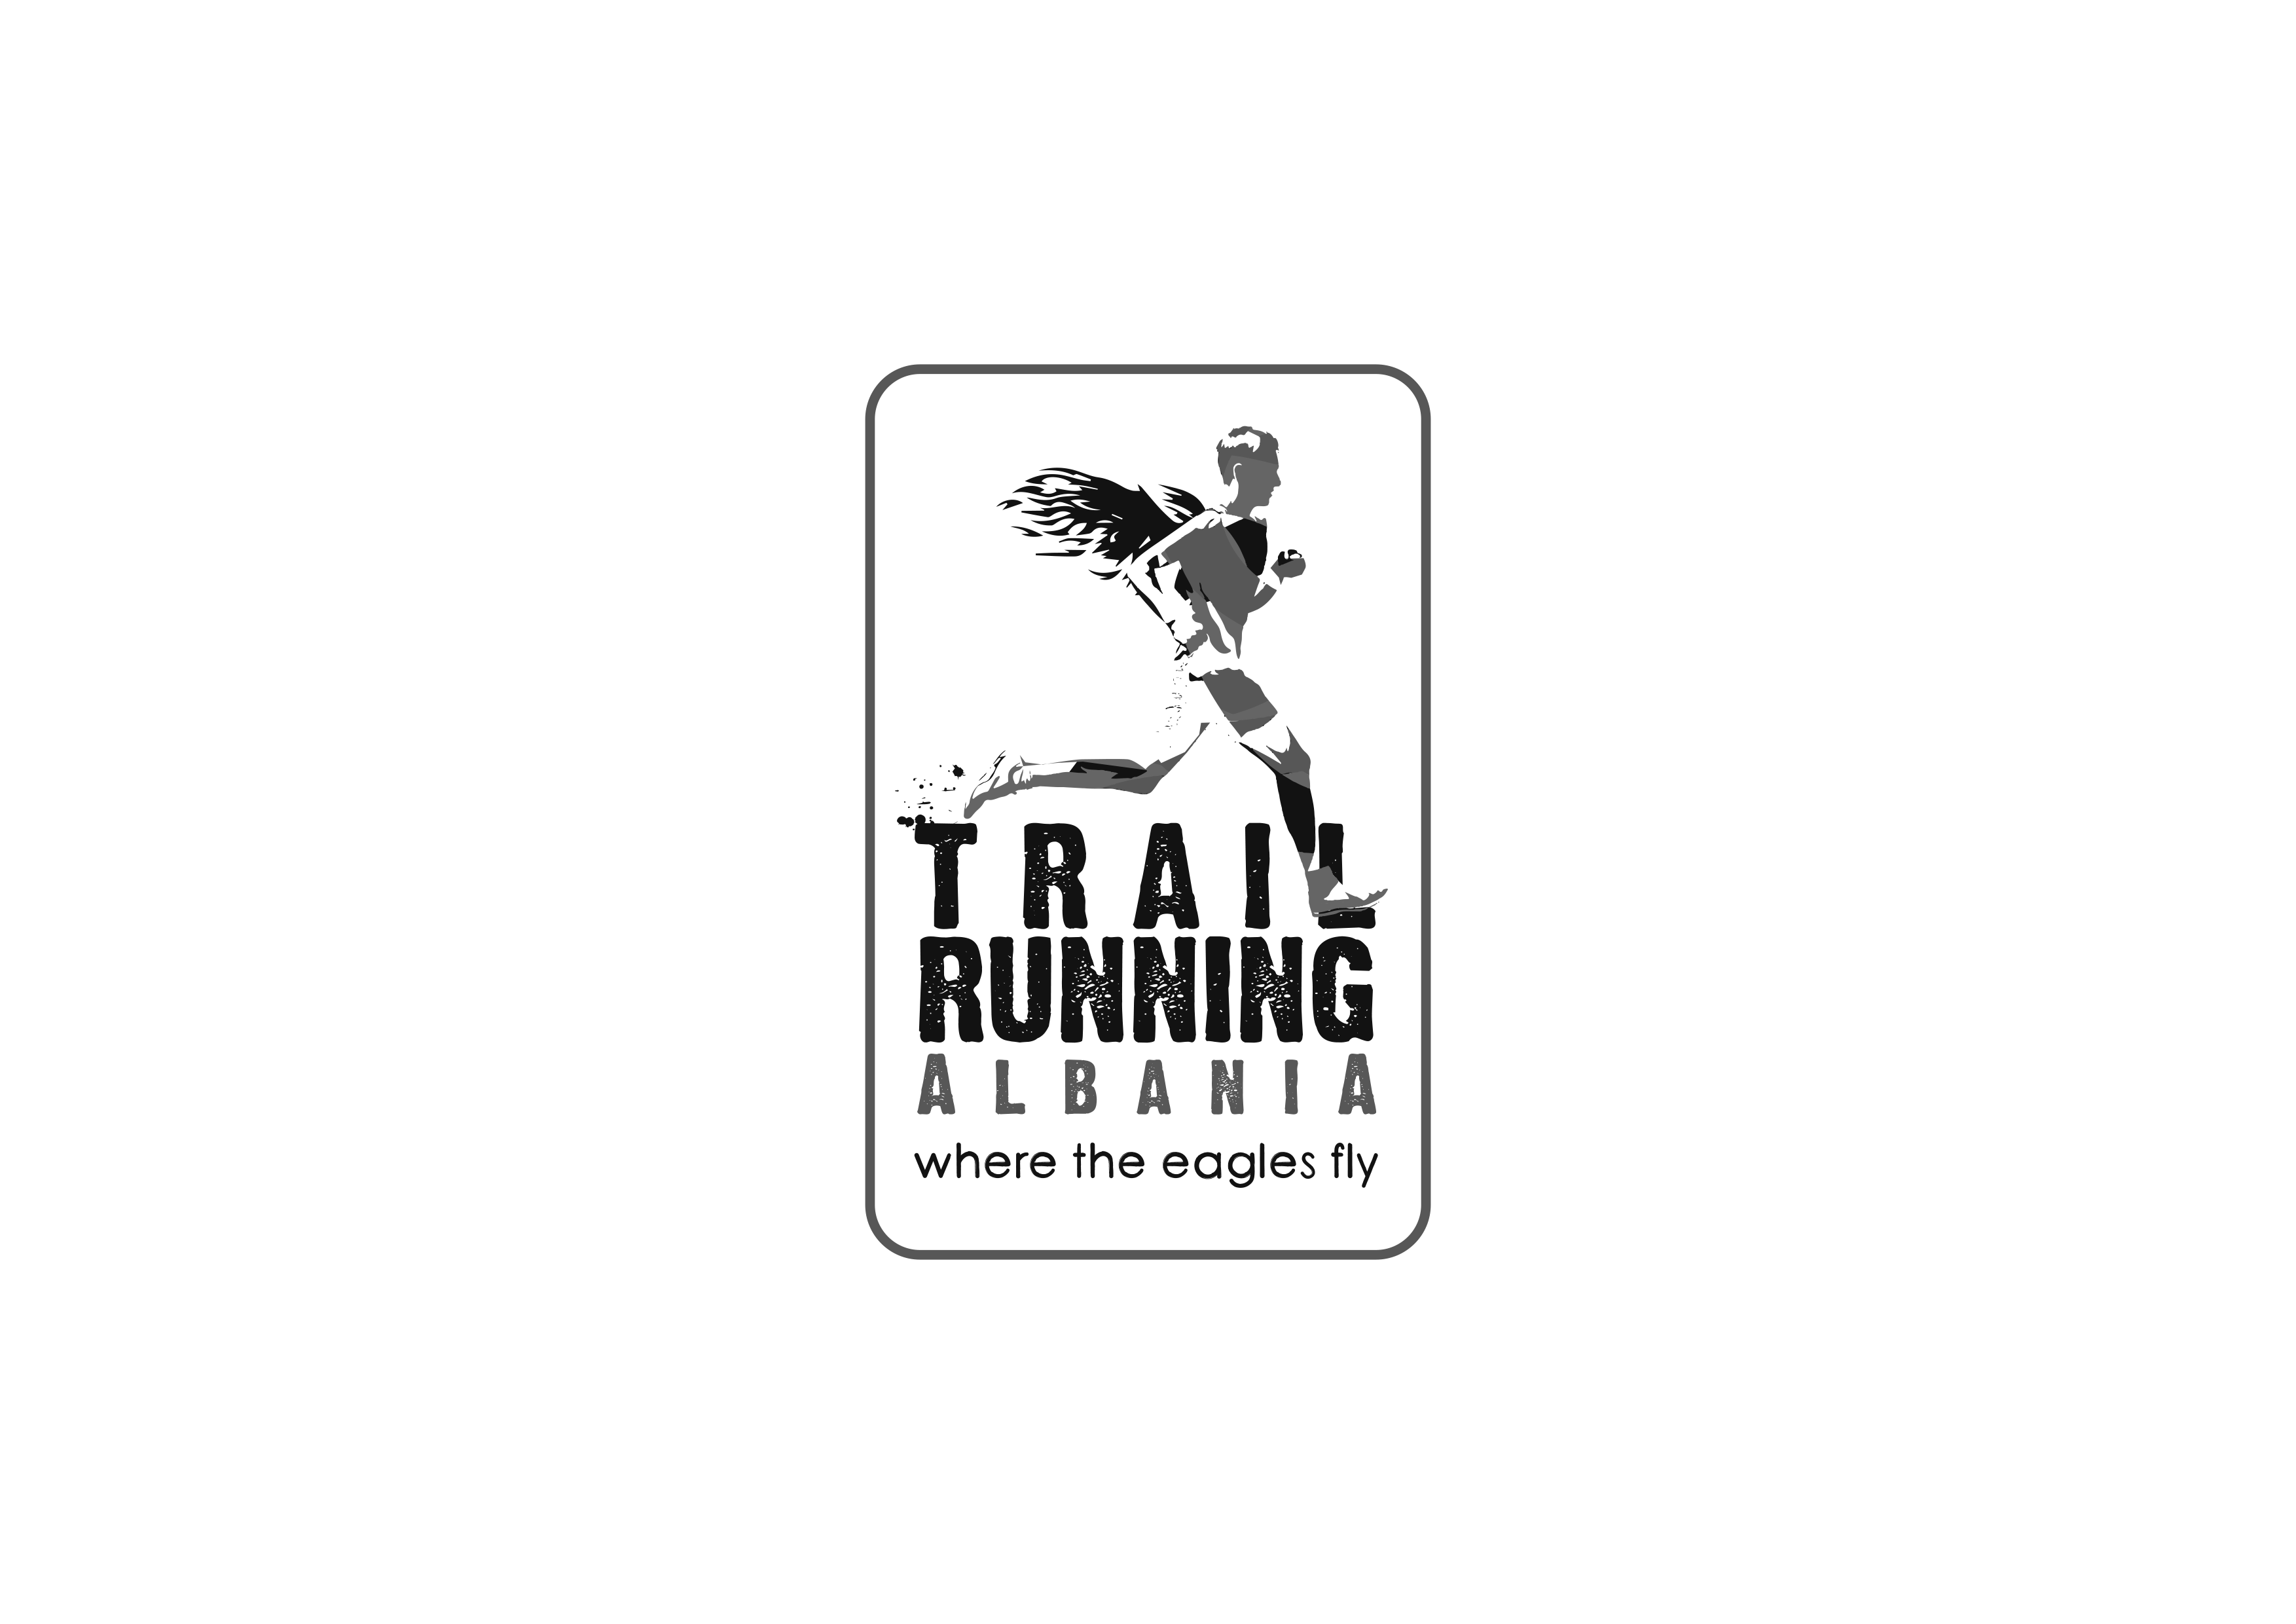 Trail Running Albania